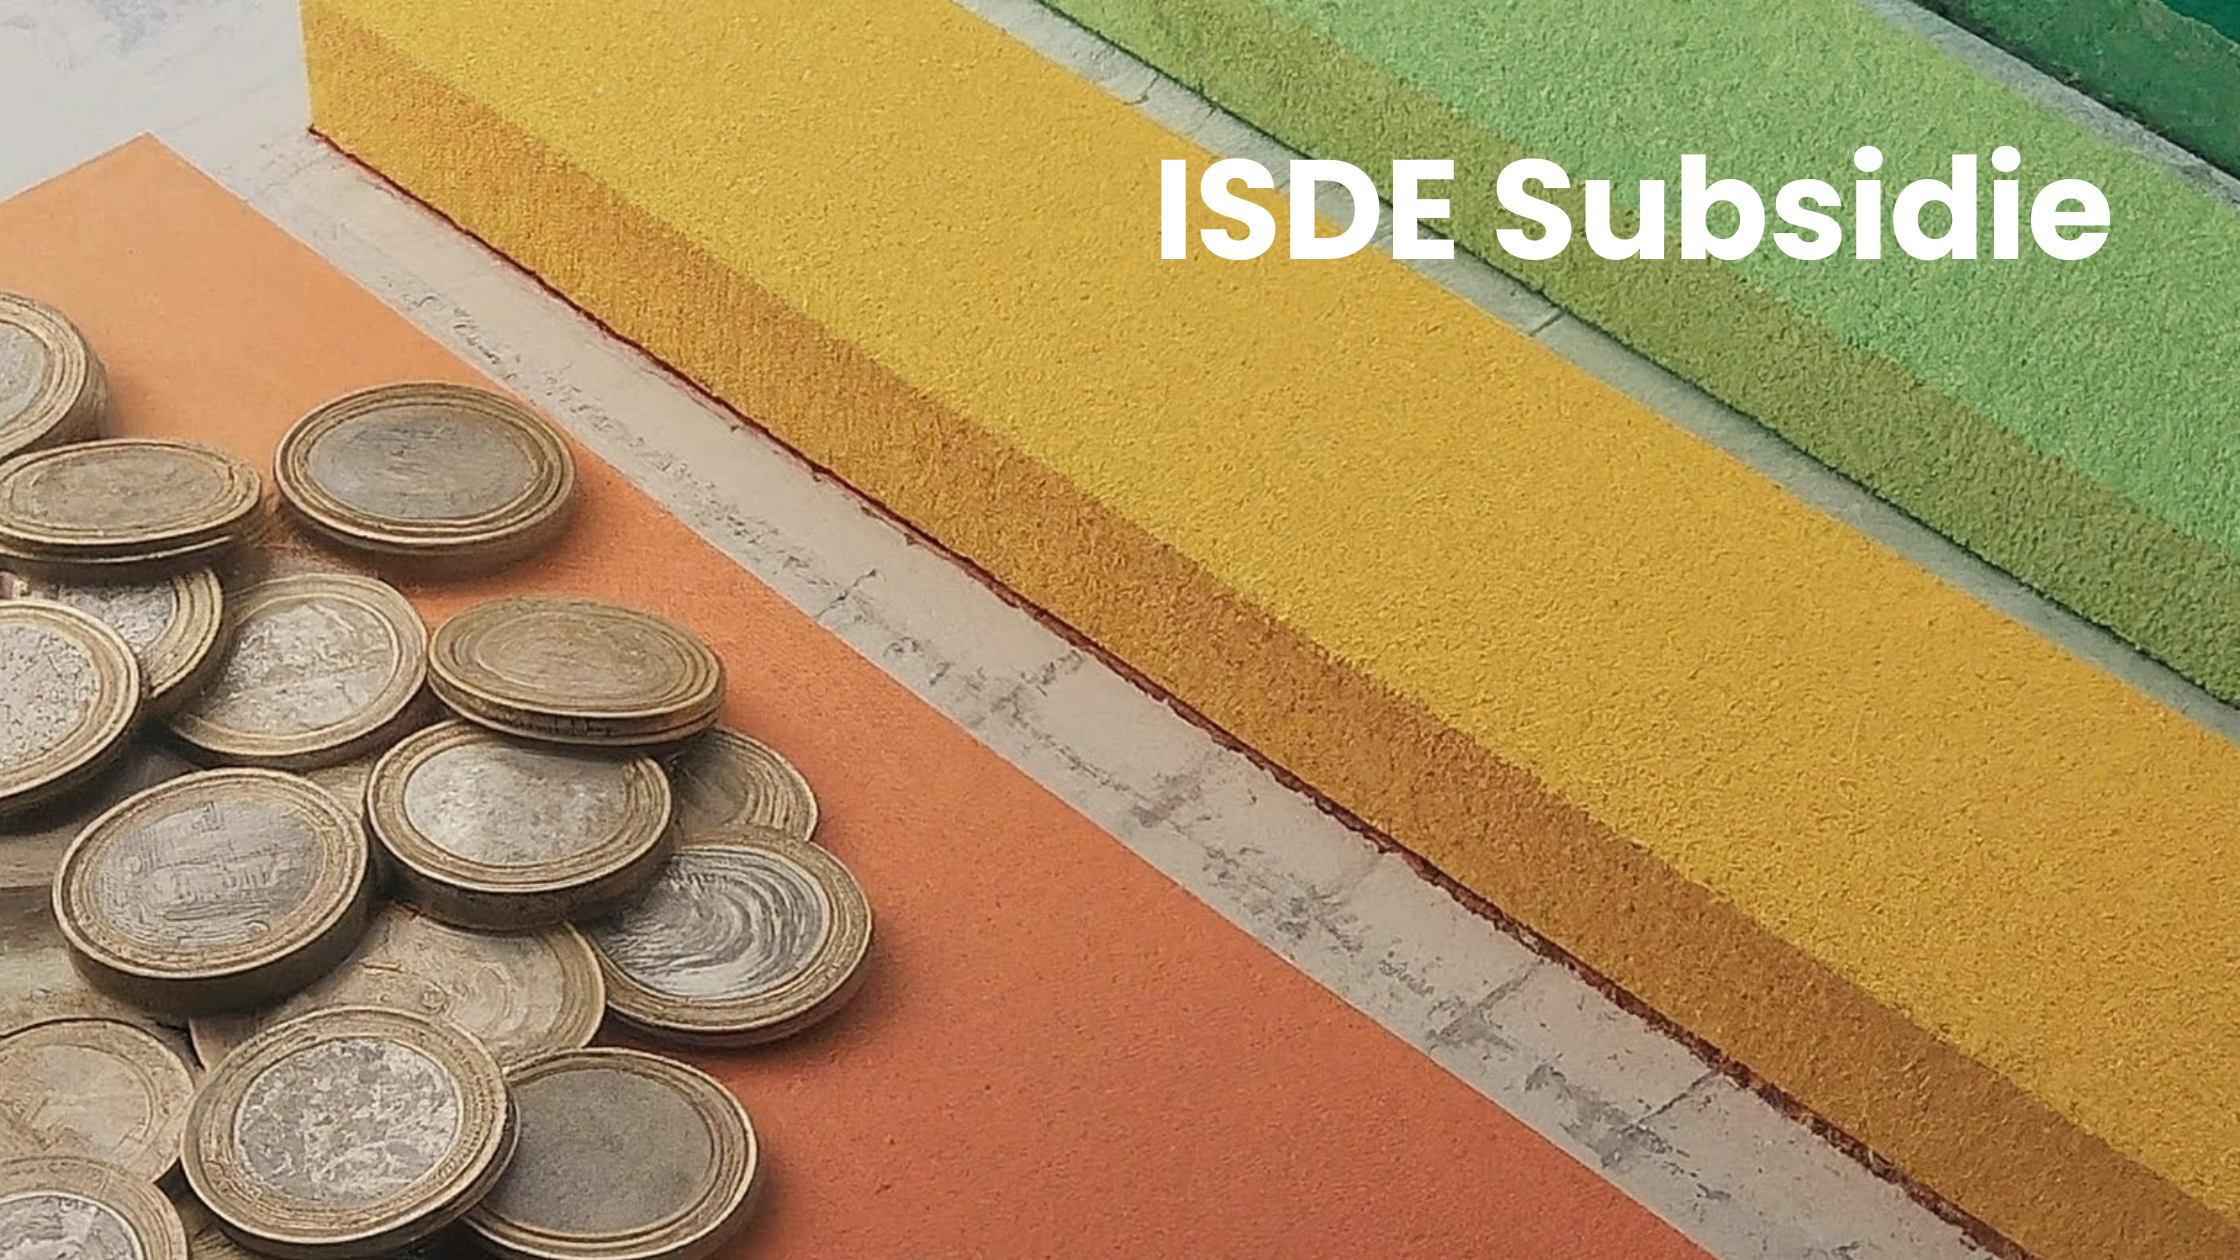 Besparen op isolatie met ISDE subsidie